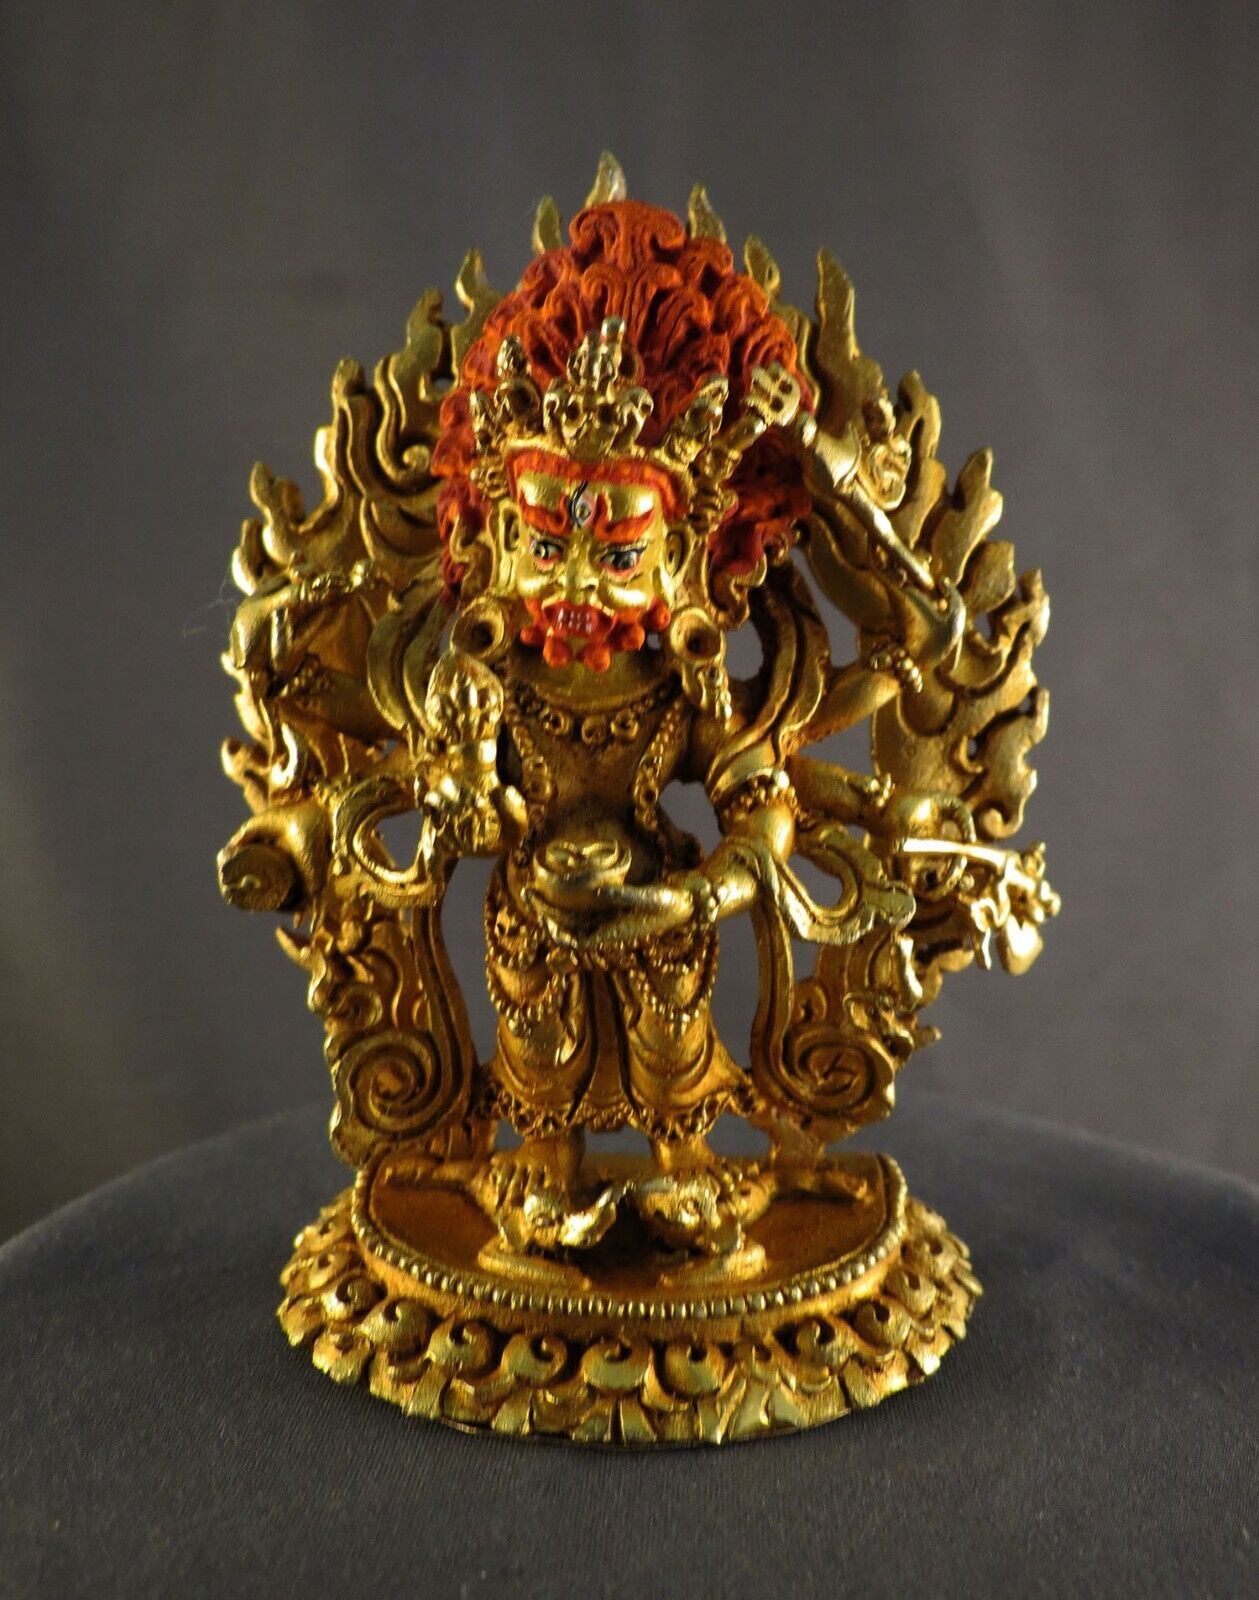 Six hand White Mahakala Bhairav Guru Dragpo Padma Sharvari Gold Face Figure free